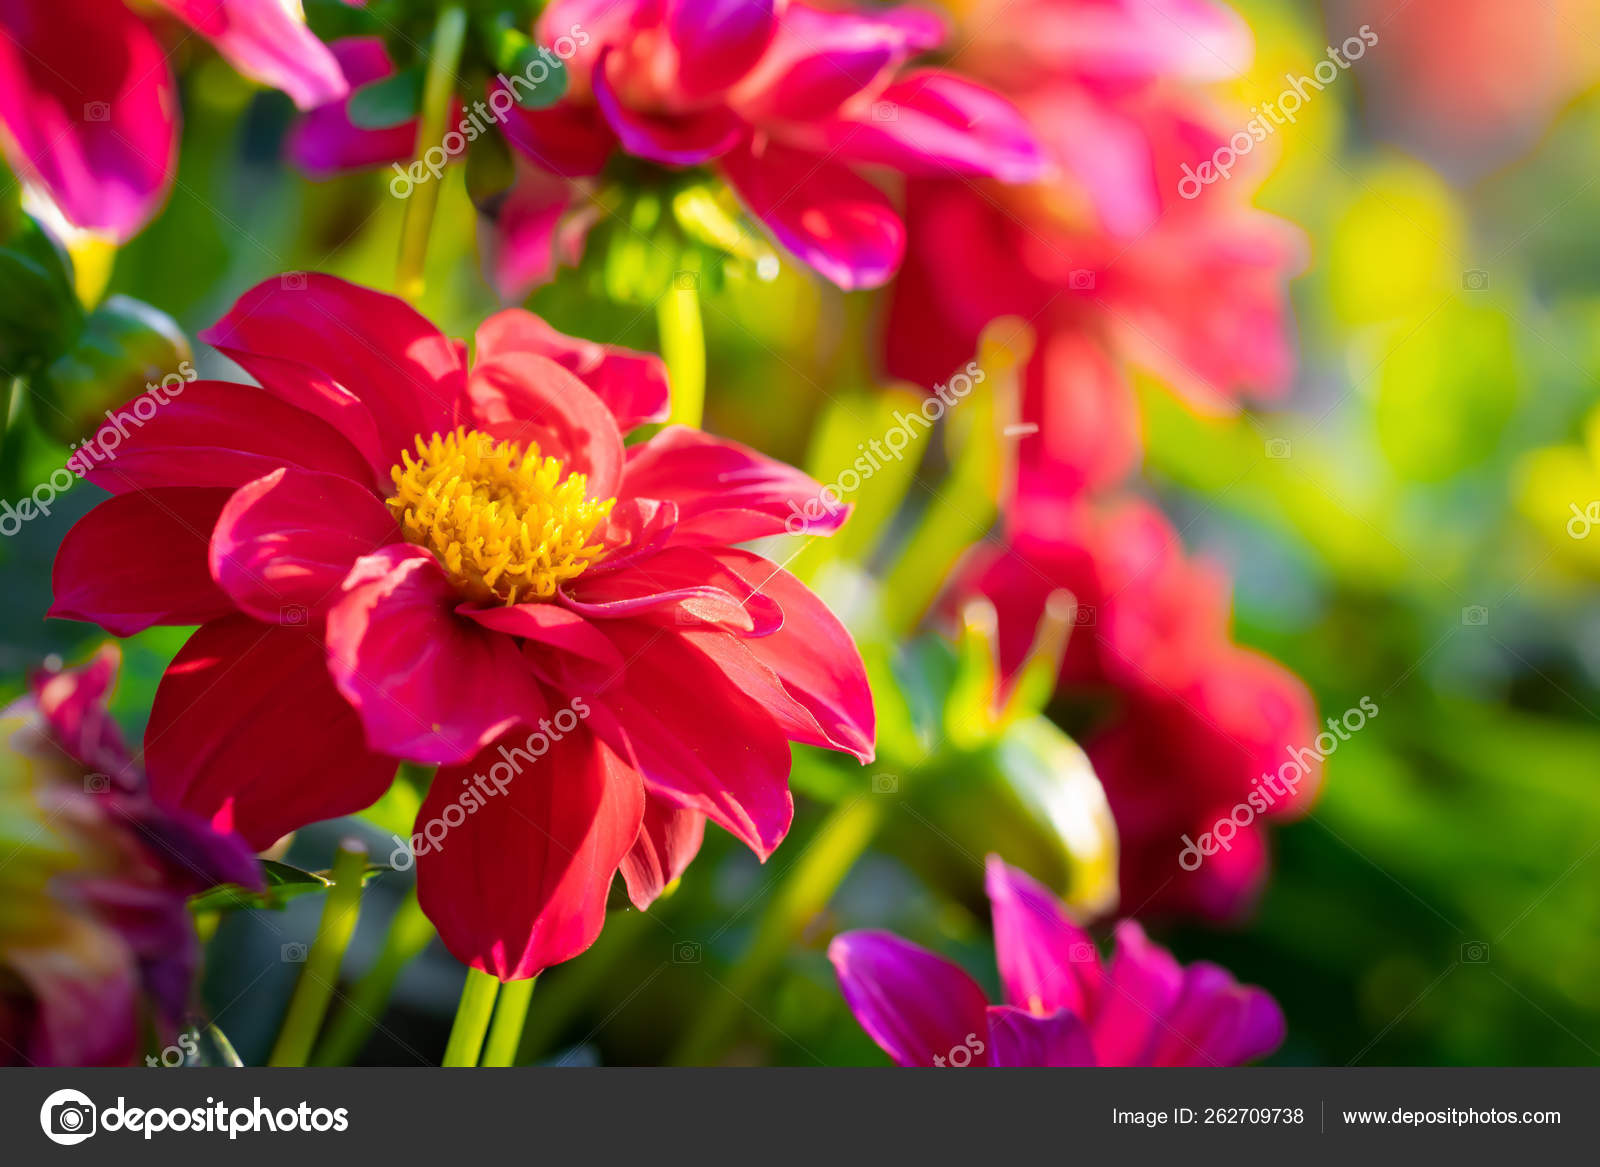 Dálias vermelhas floridas no jardim fotos, imagens de © LuGrish #262709738